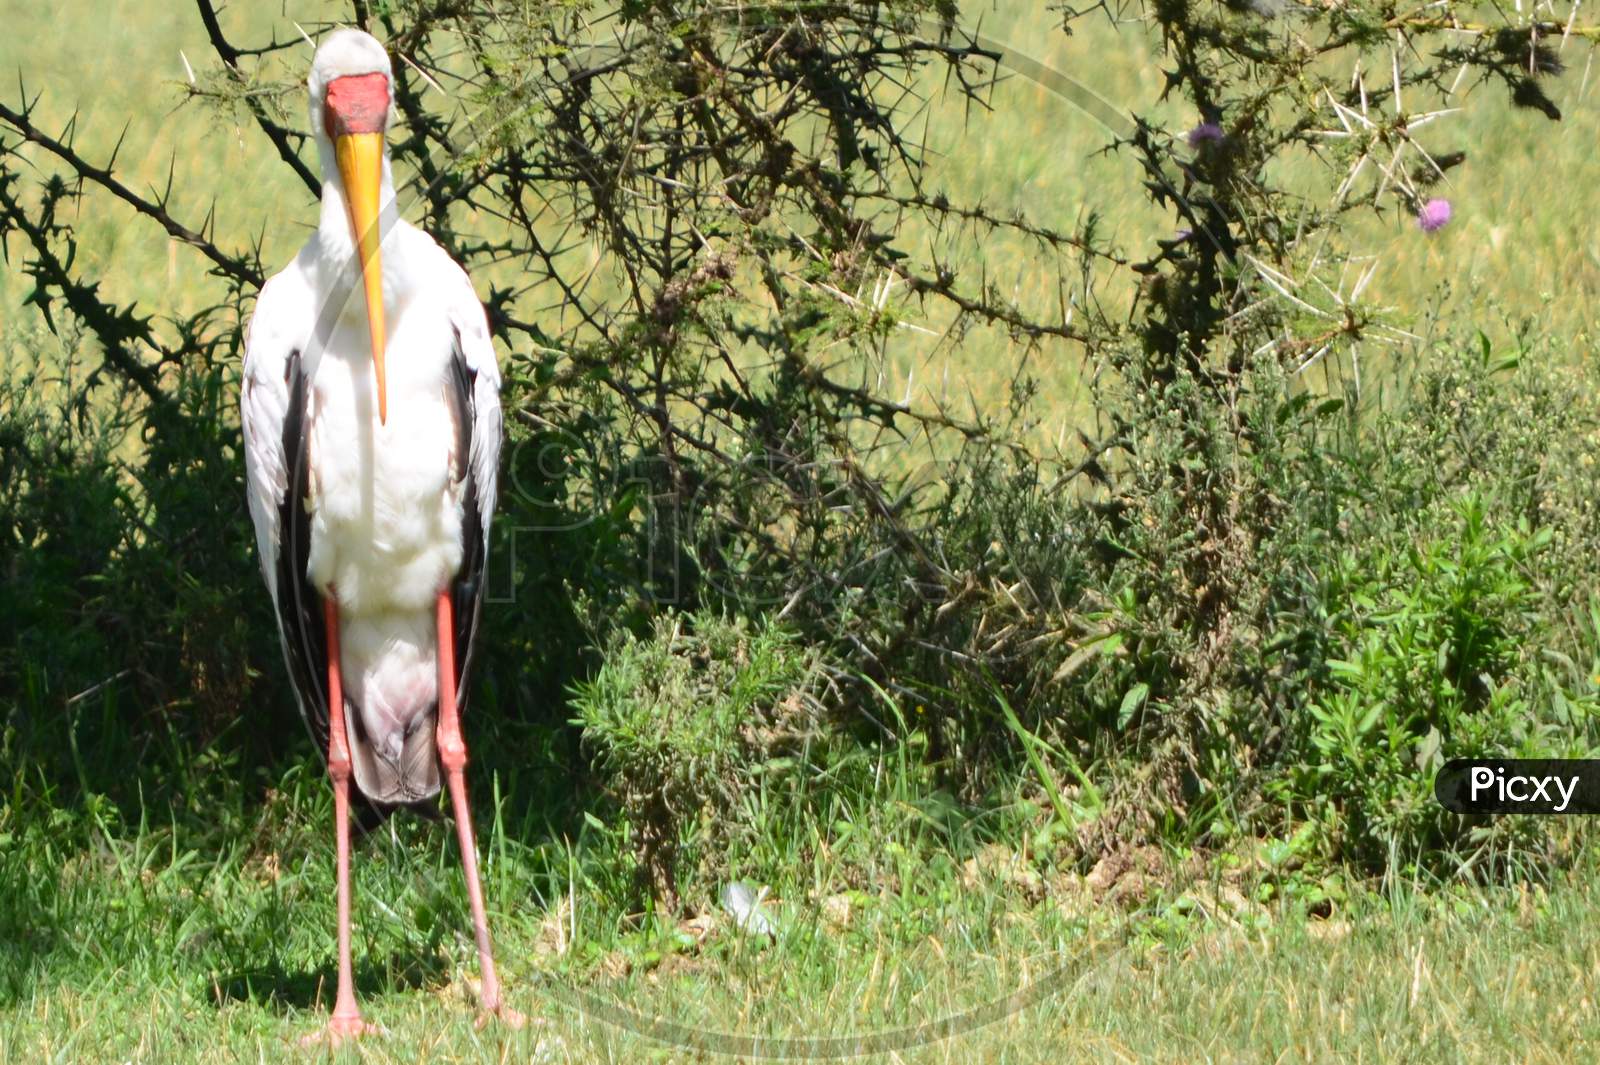 Stork in the Wild